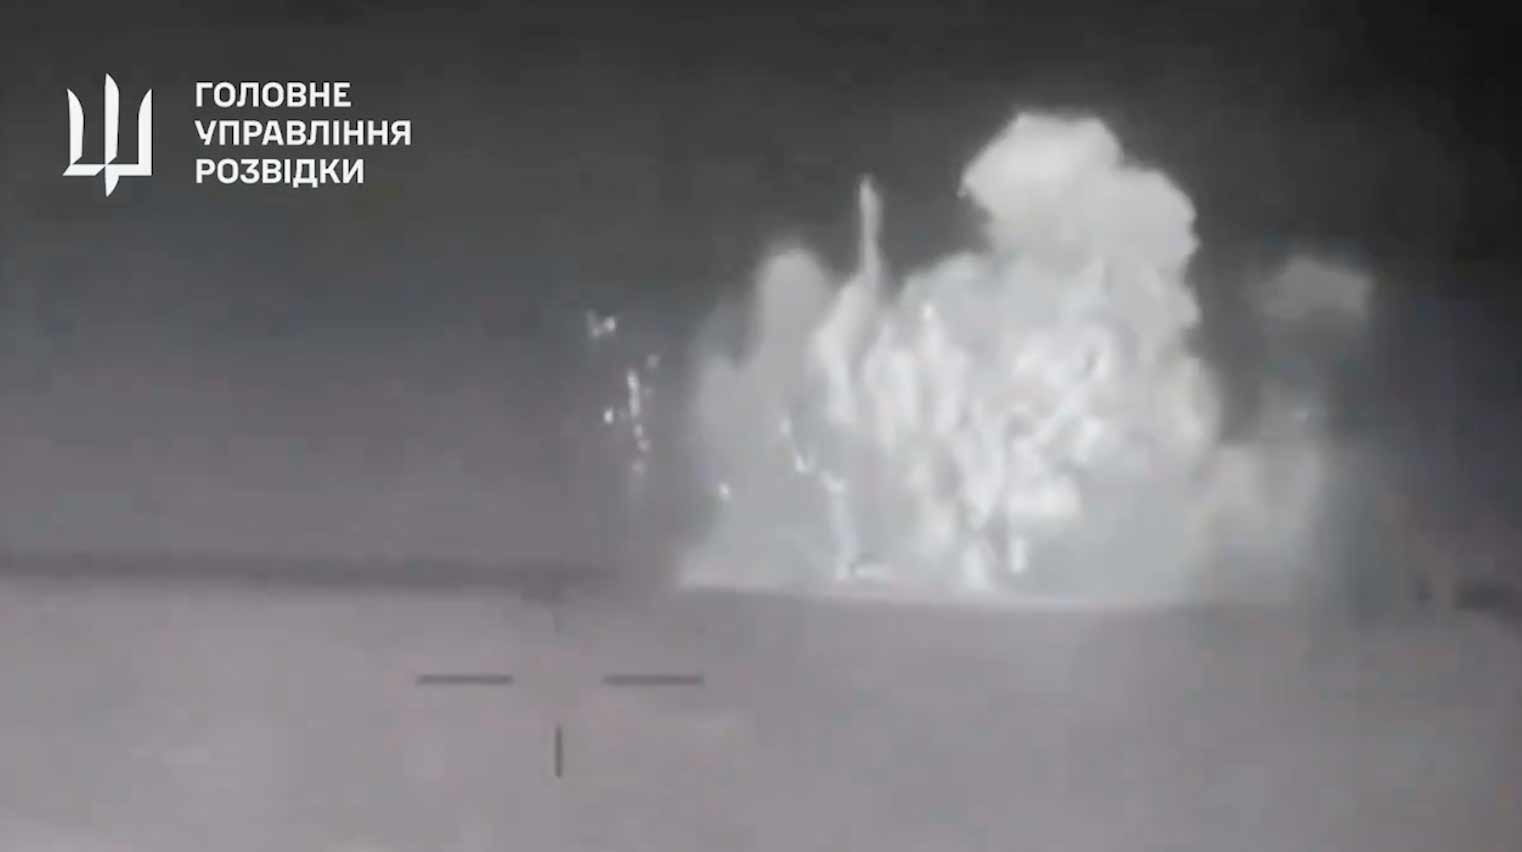 Neues Video zeigt die Explosion, die das russische Schiff Sergey Kotov versenkte. Wiedergabe Twitter @wartranslated